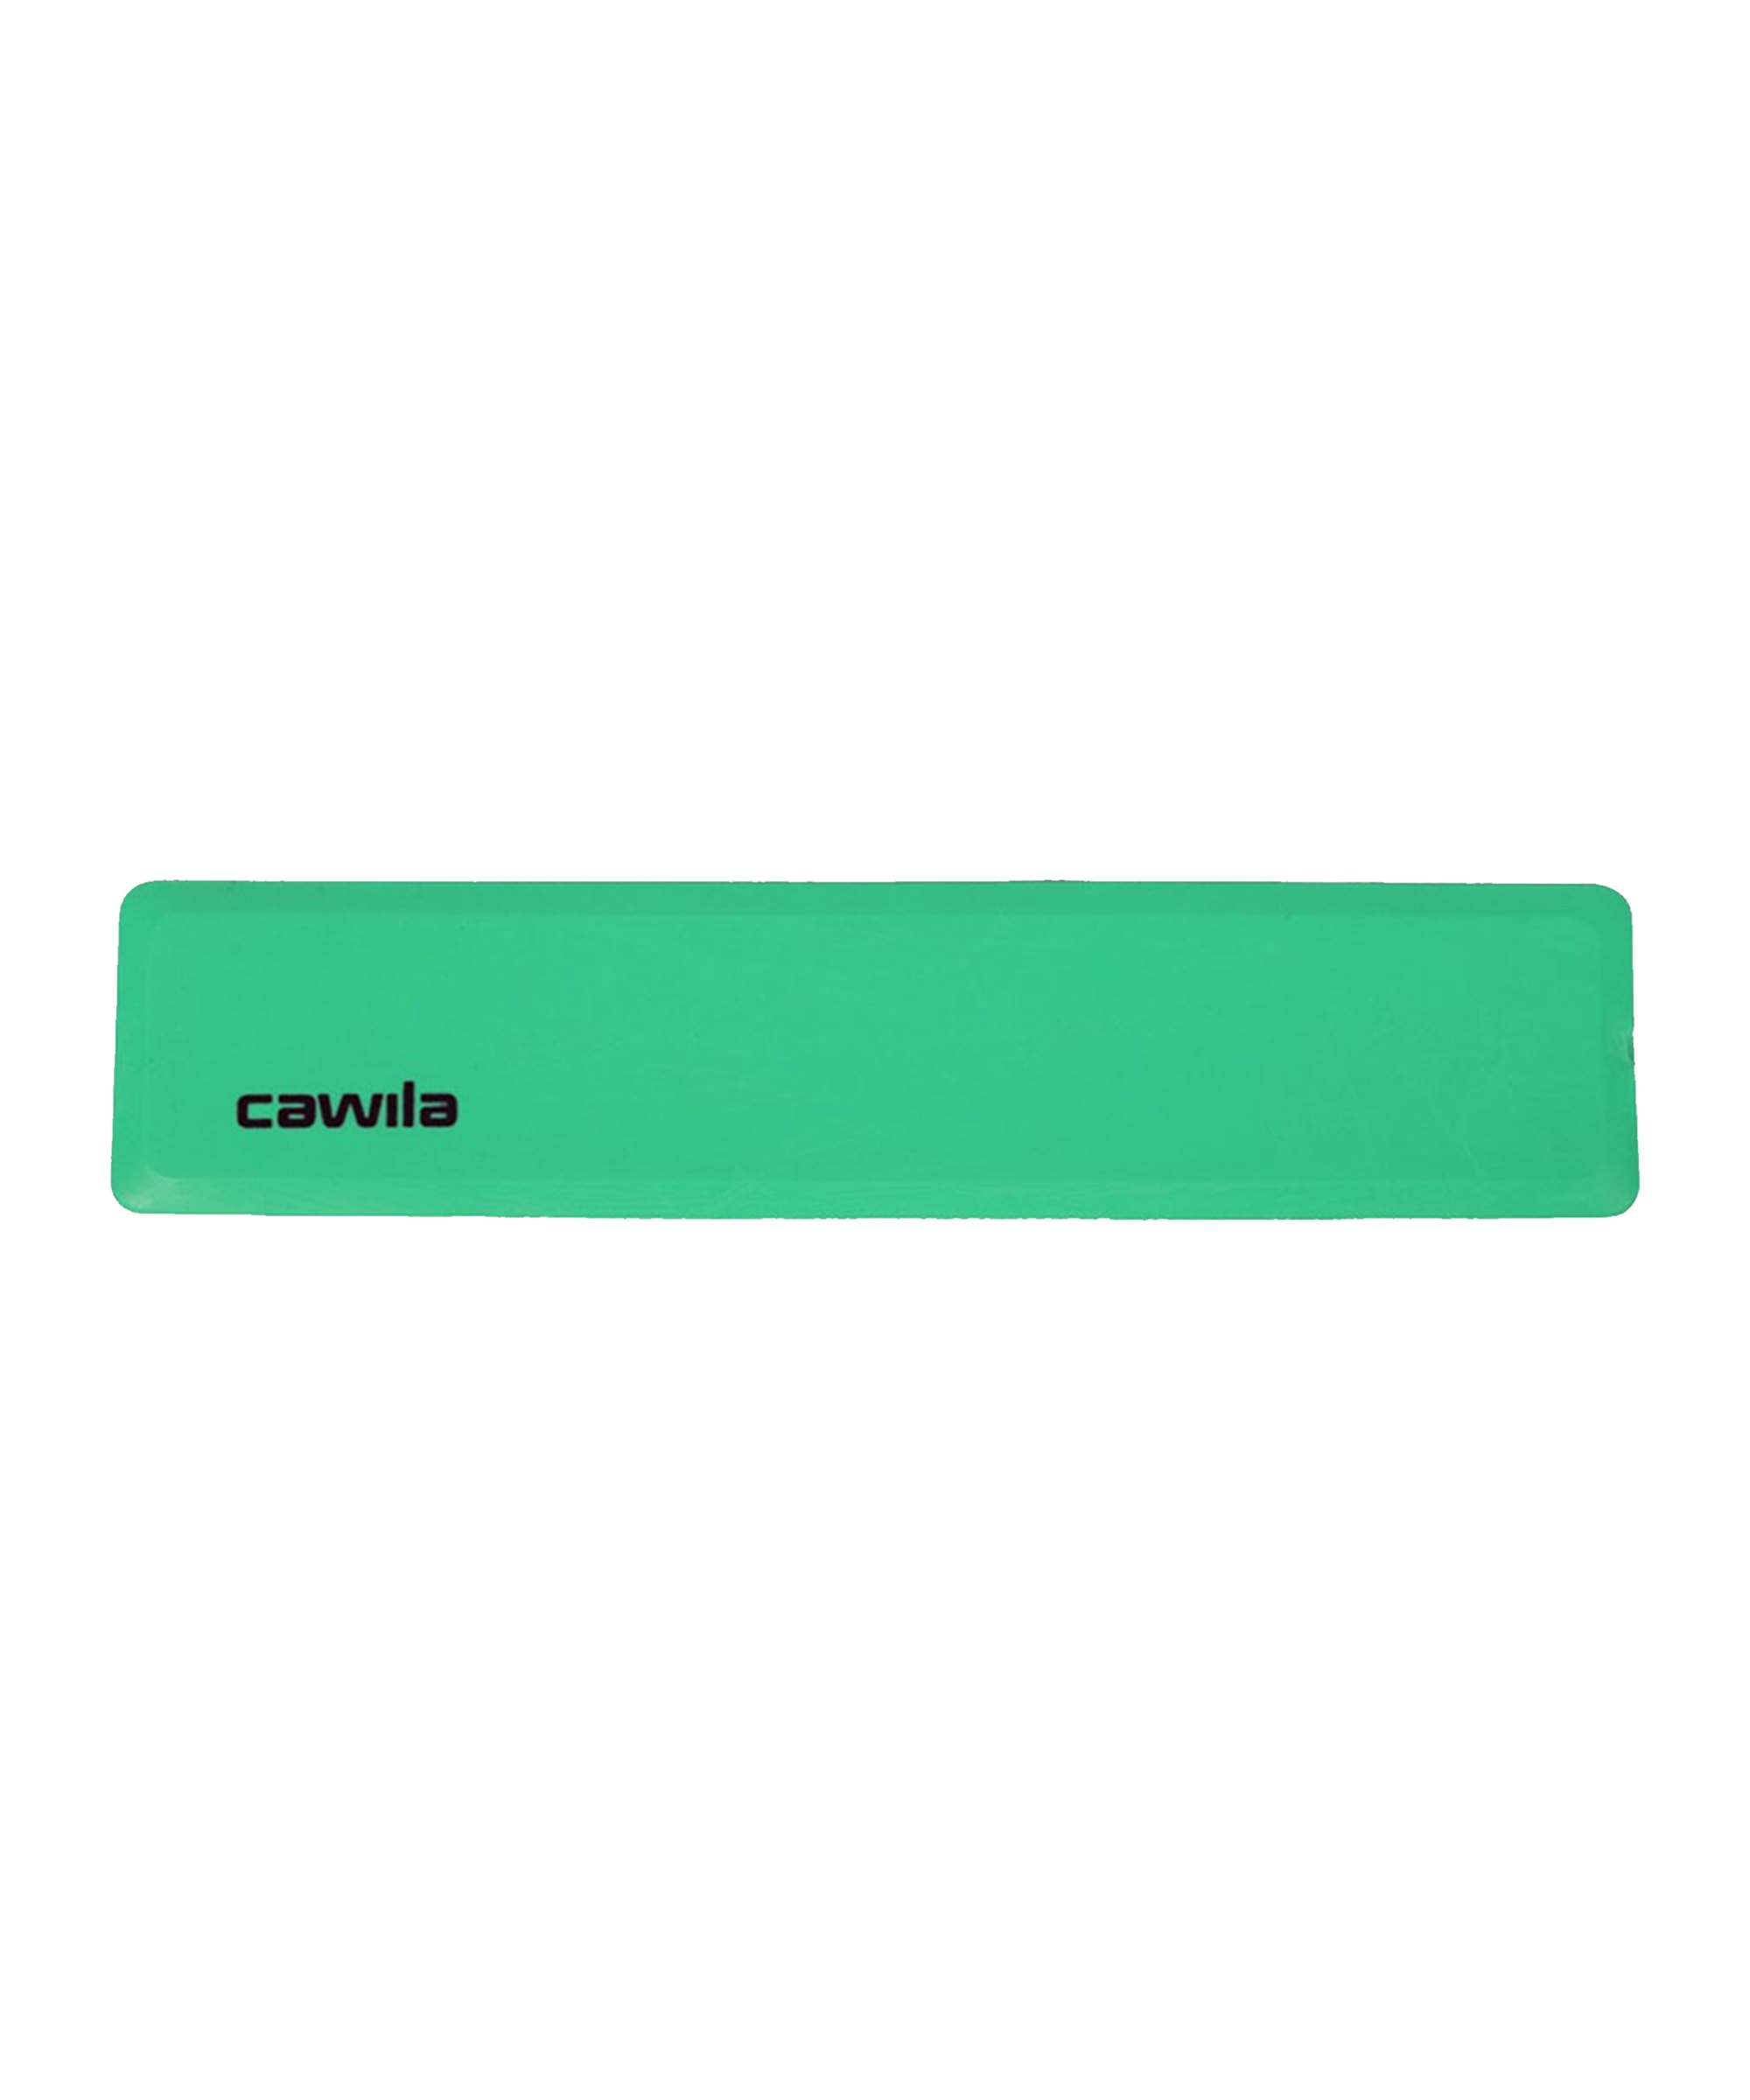 Cawila Marker-System Gerade 34x75cm Grün - gruen